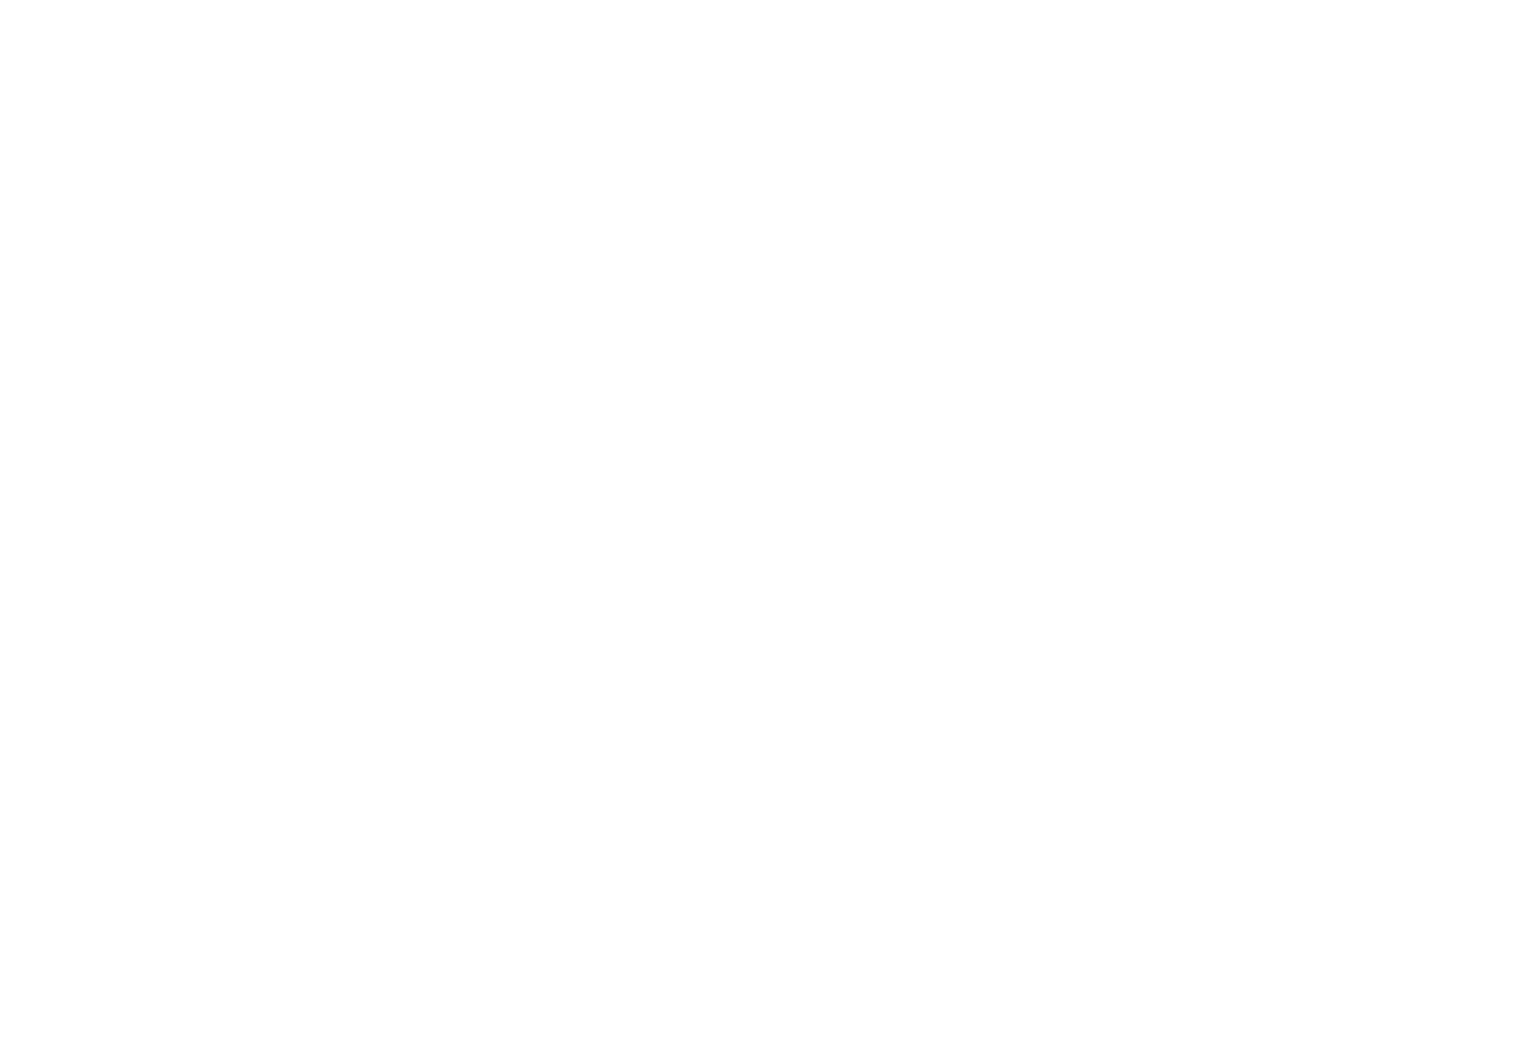 Woodmont Properties